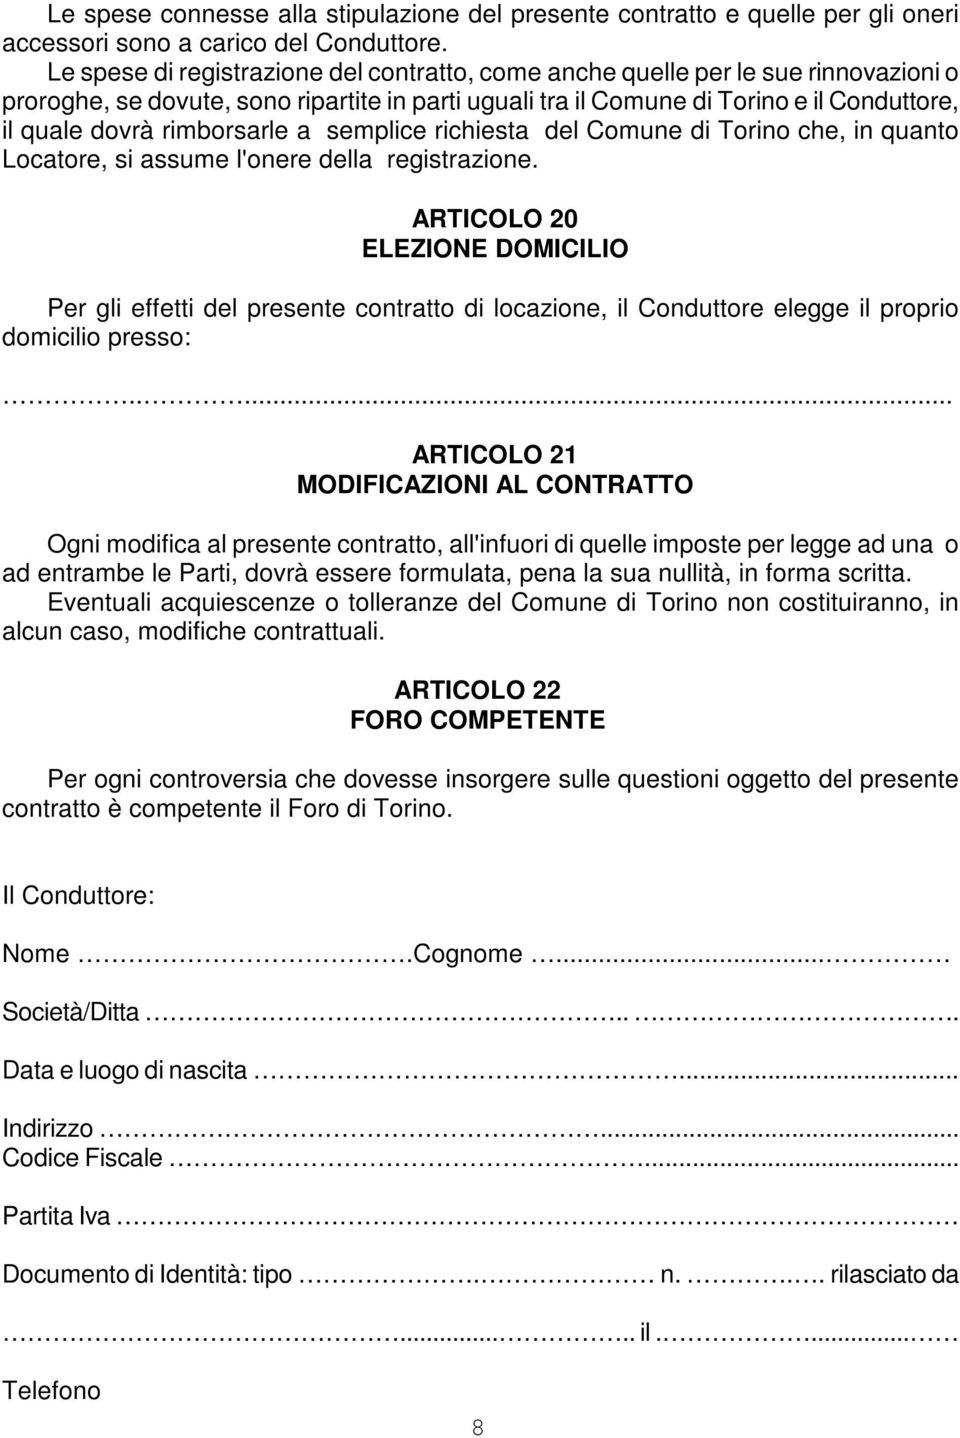 rimborsarle a semplice richiesta del Comune di Torino che, in quanto Locatore, si assume l'onere della registrazione.